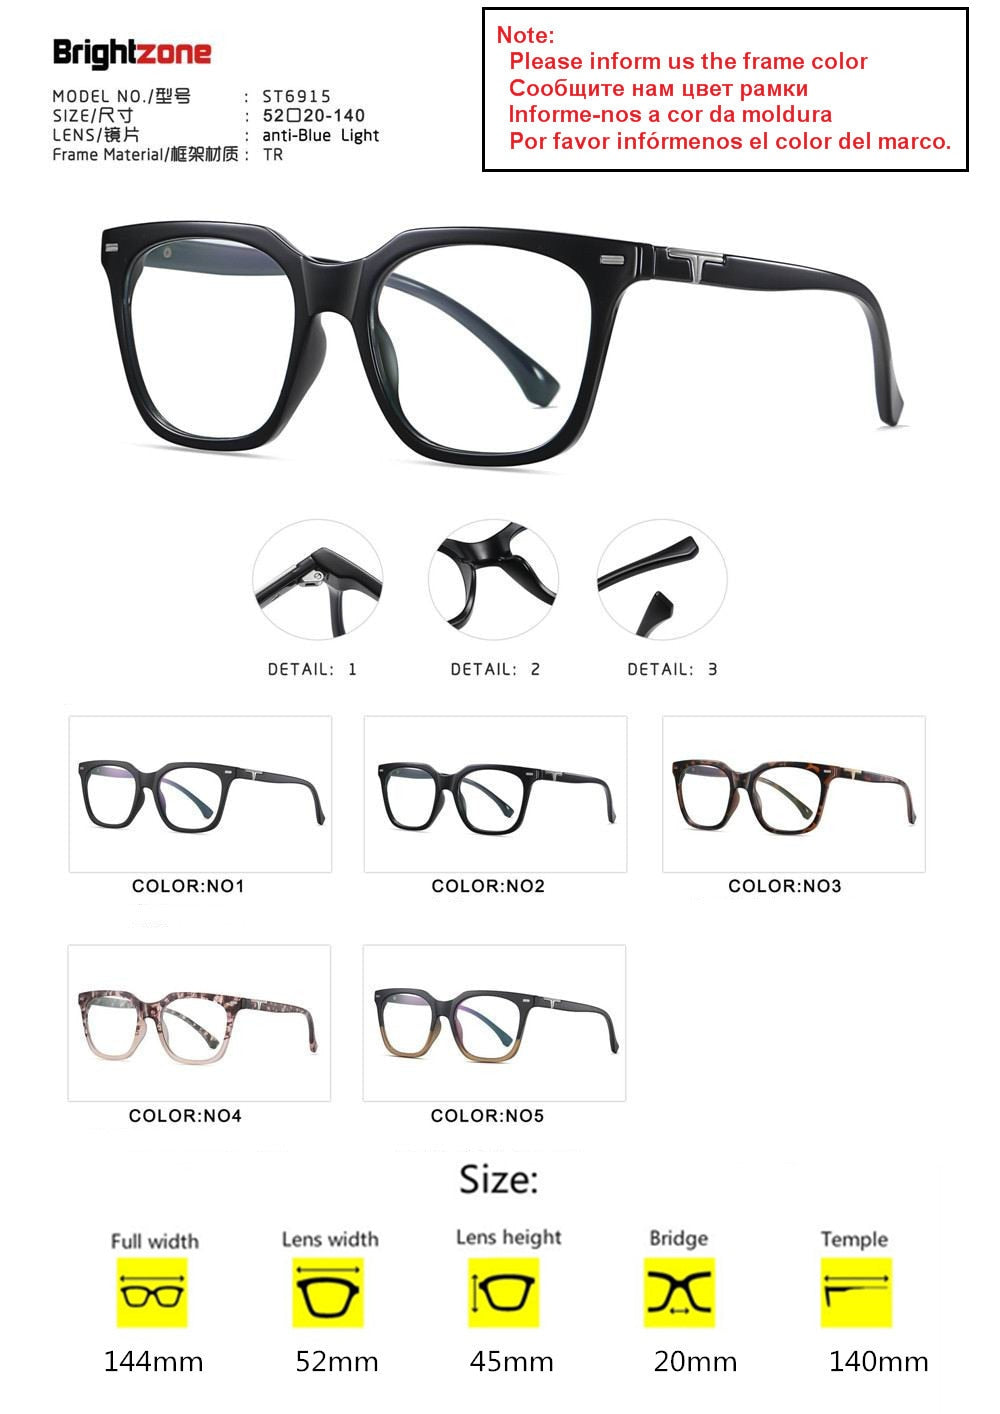 Men's Eyeglasses Computer Glasses Anti Blue Ray Light Cr39 Frame Brightzone 6915 tell framecolor  